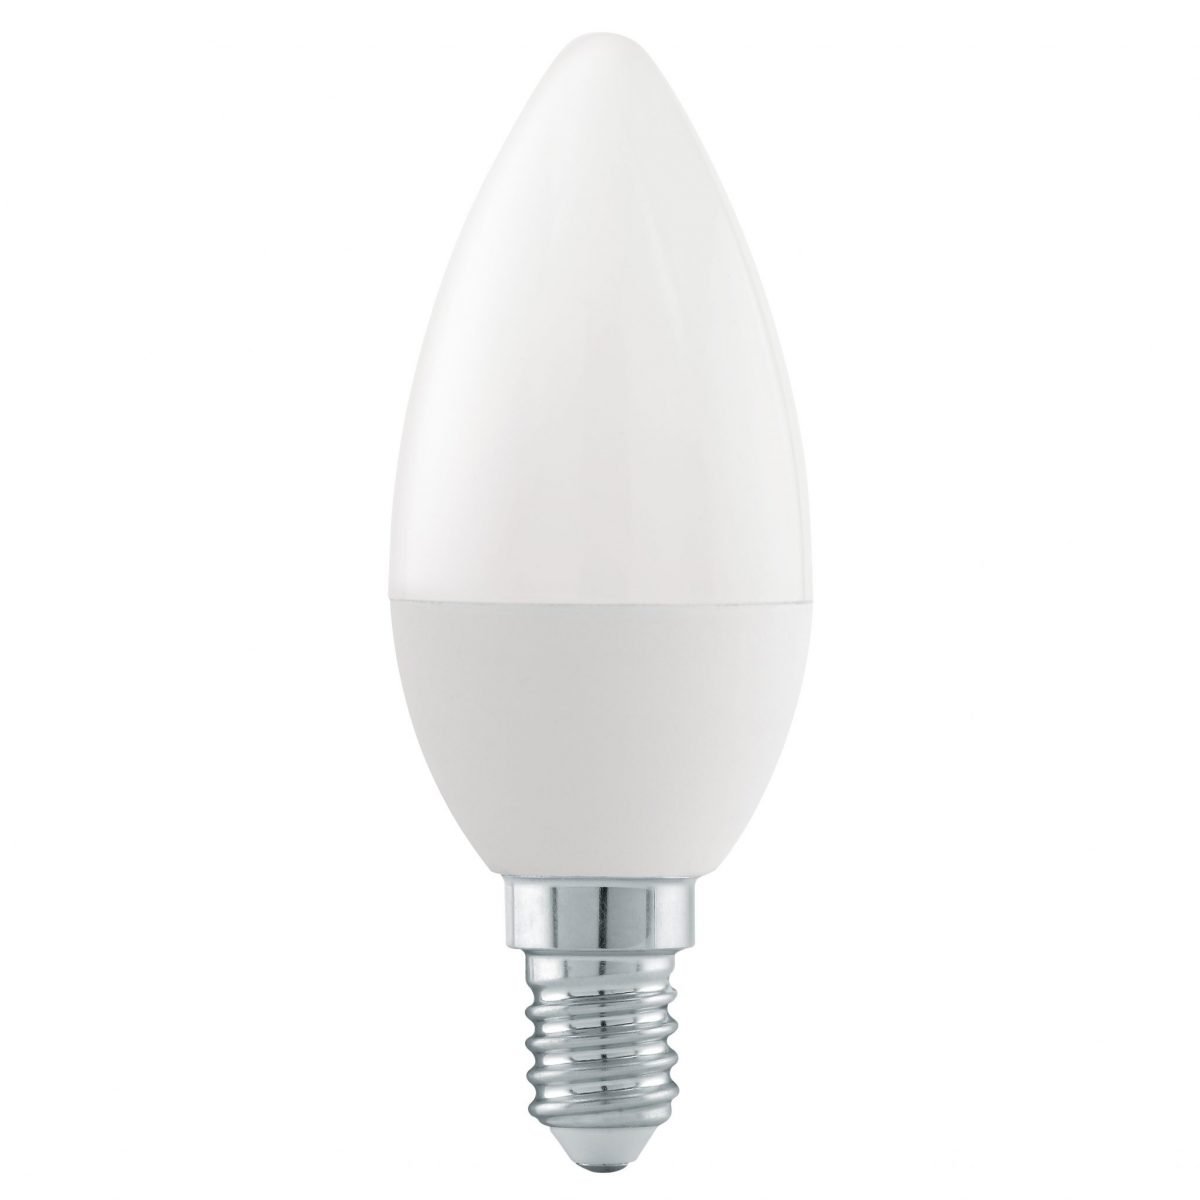 Лампа полупроводниковая LED SMART